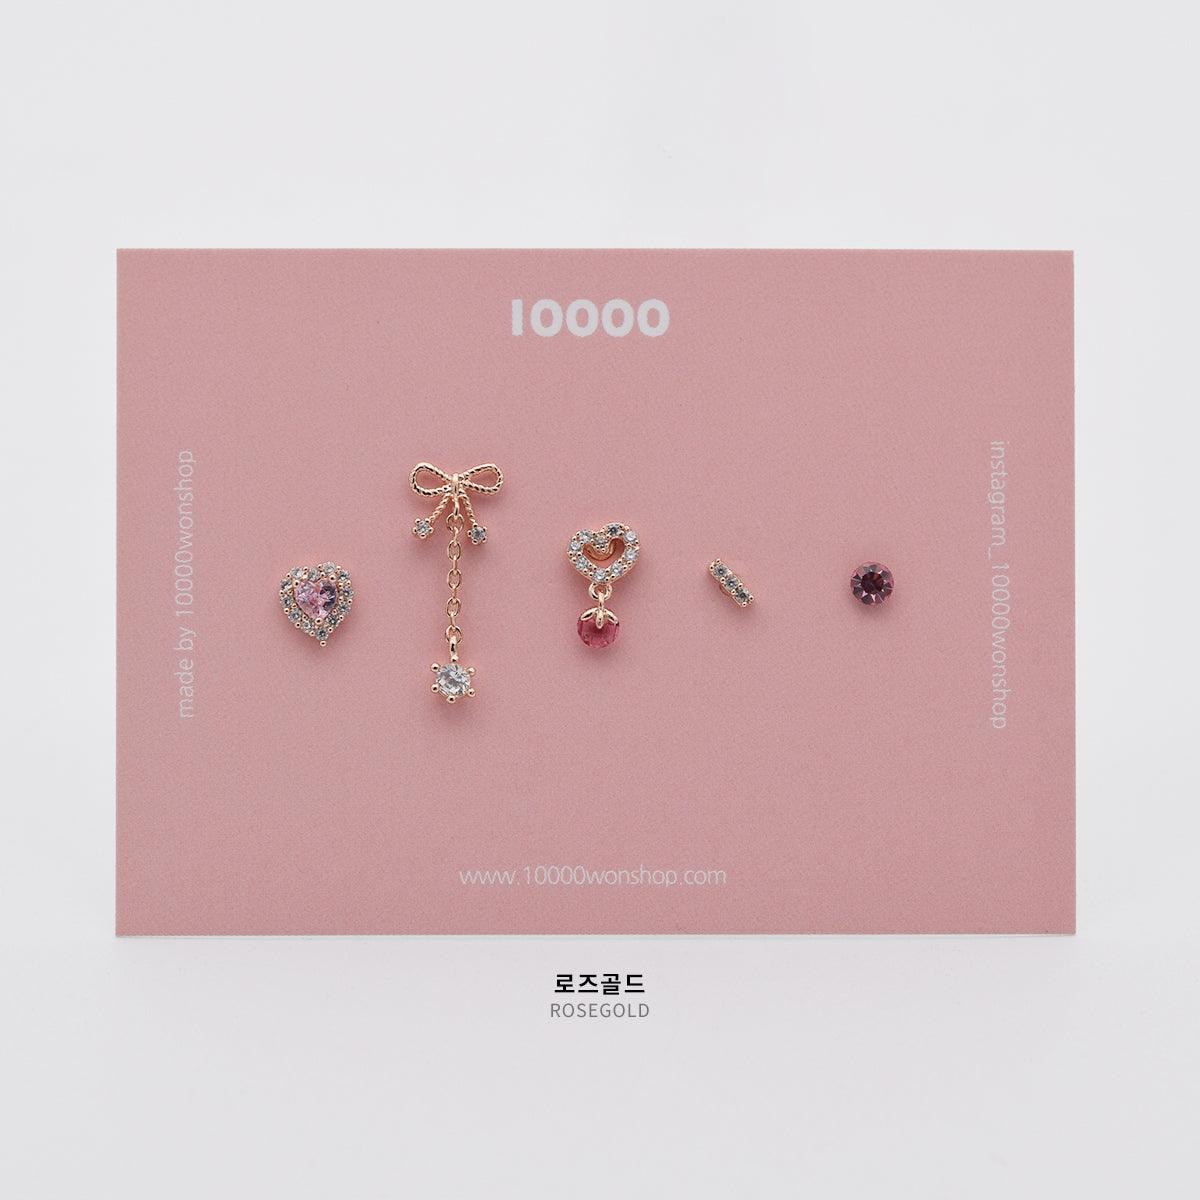 ロマンチックハートピアッシング[5セット] Piercing 10000won 